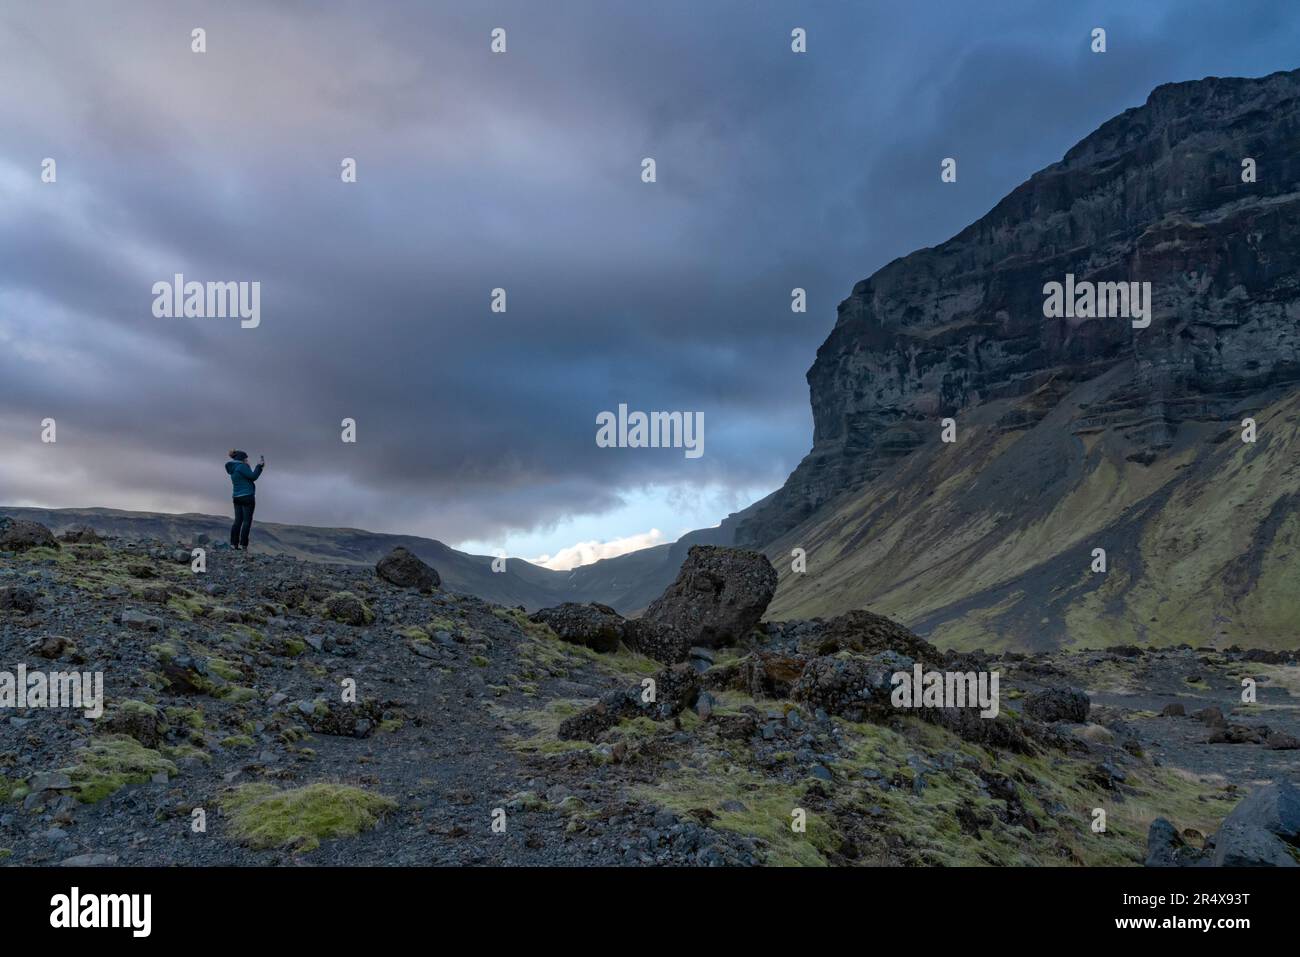 Donna in piedi sul paesaggio vulcanico e roccioso ammirando la bellezza naturale e scattando una foto delle montagne e delle spettacolari nuvole di tempesta per... Foto Stock